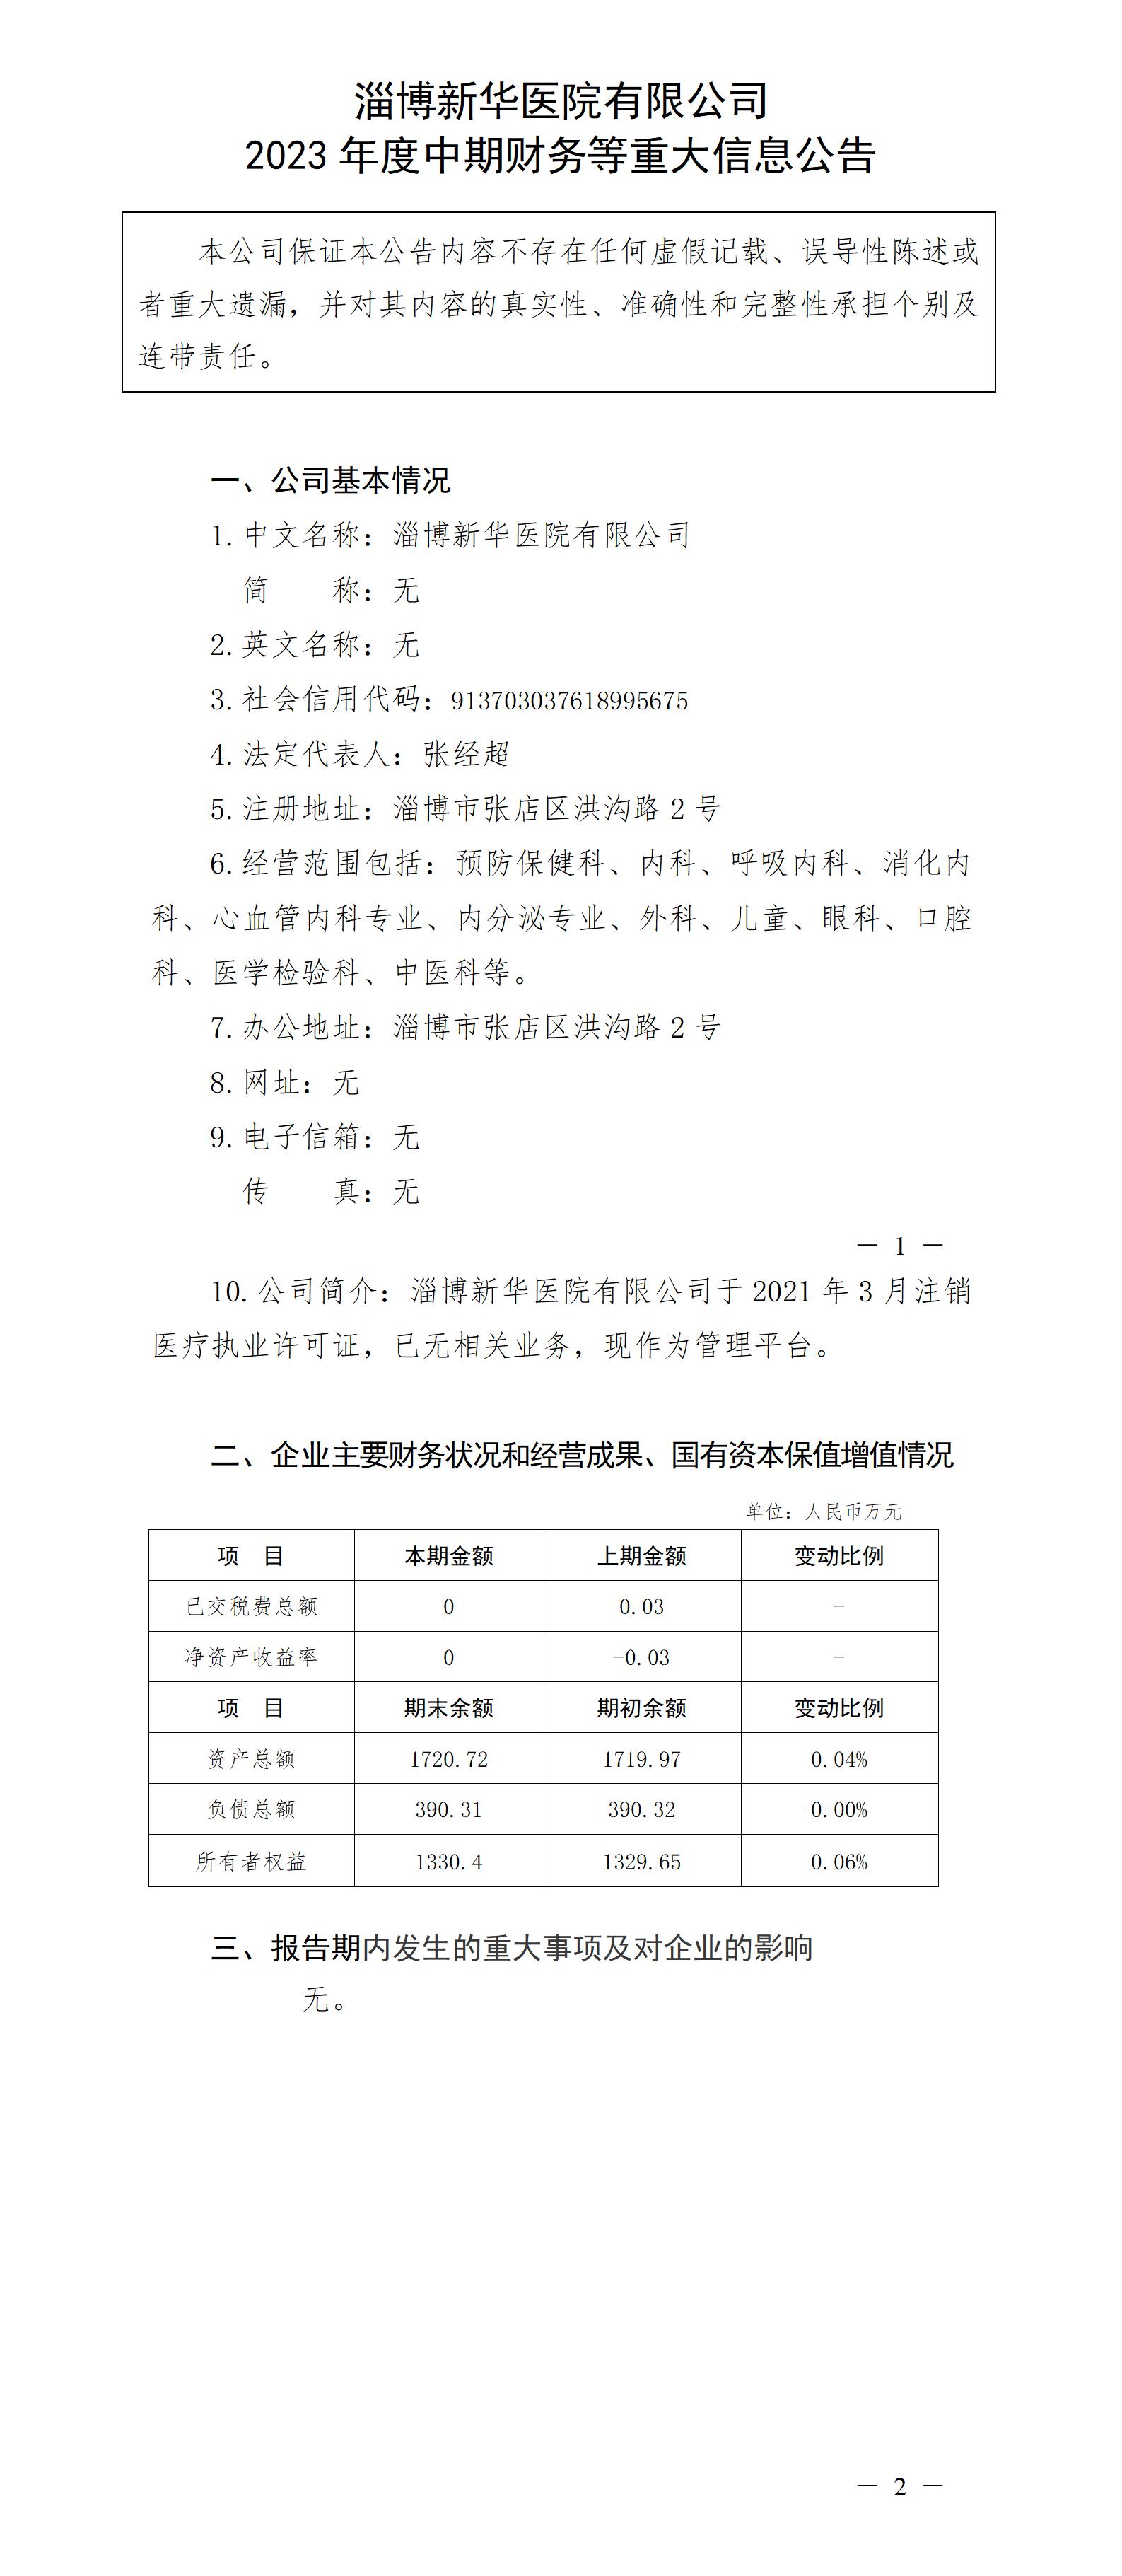 淄博新華醫院有限公司2023年度中期財務等重大信息公告_01.jpg